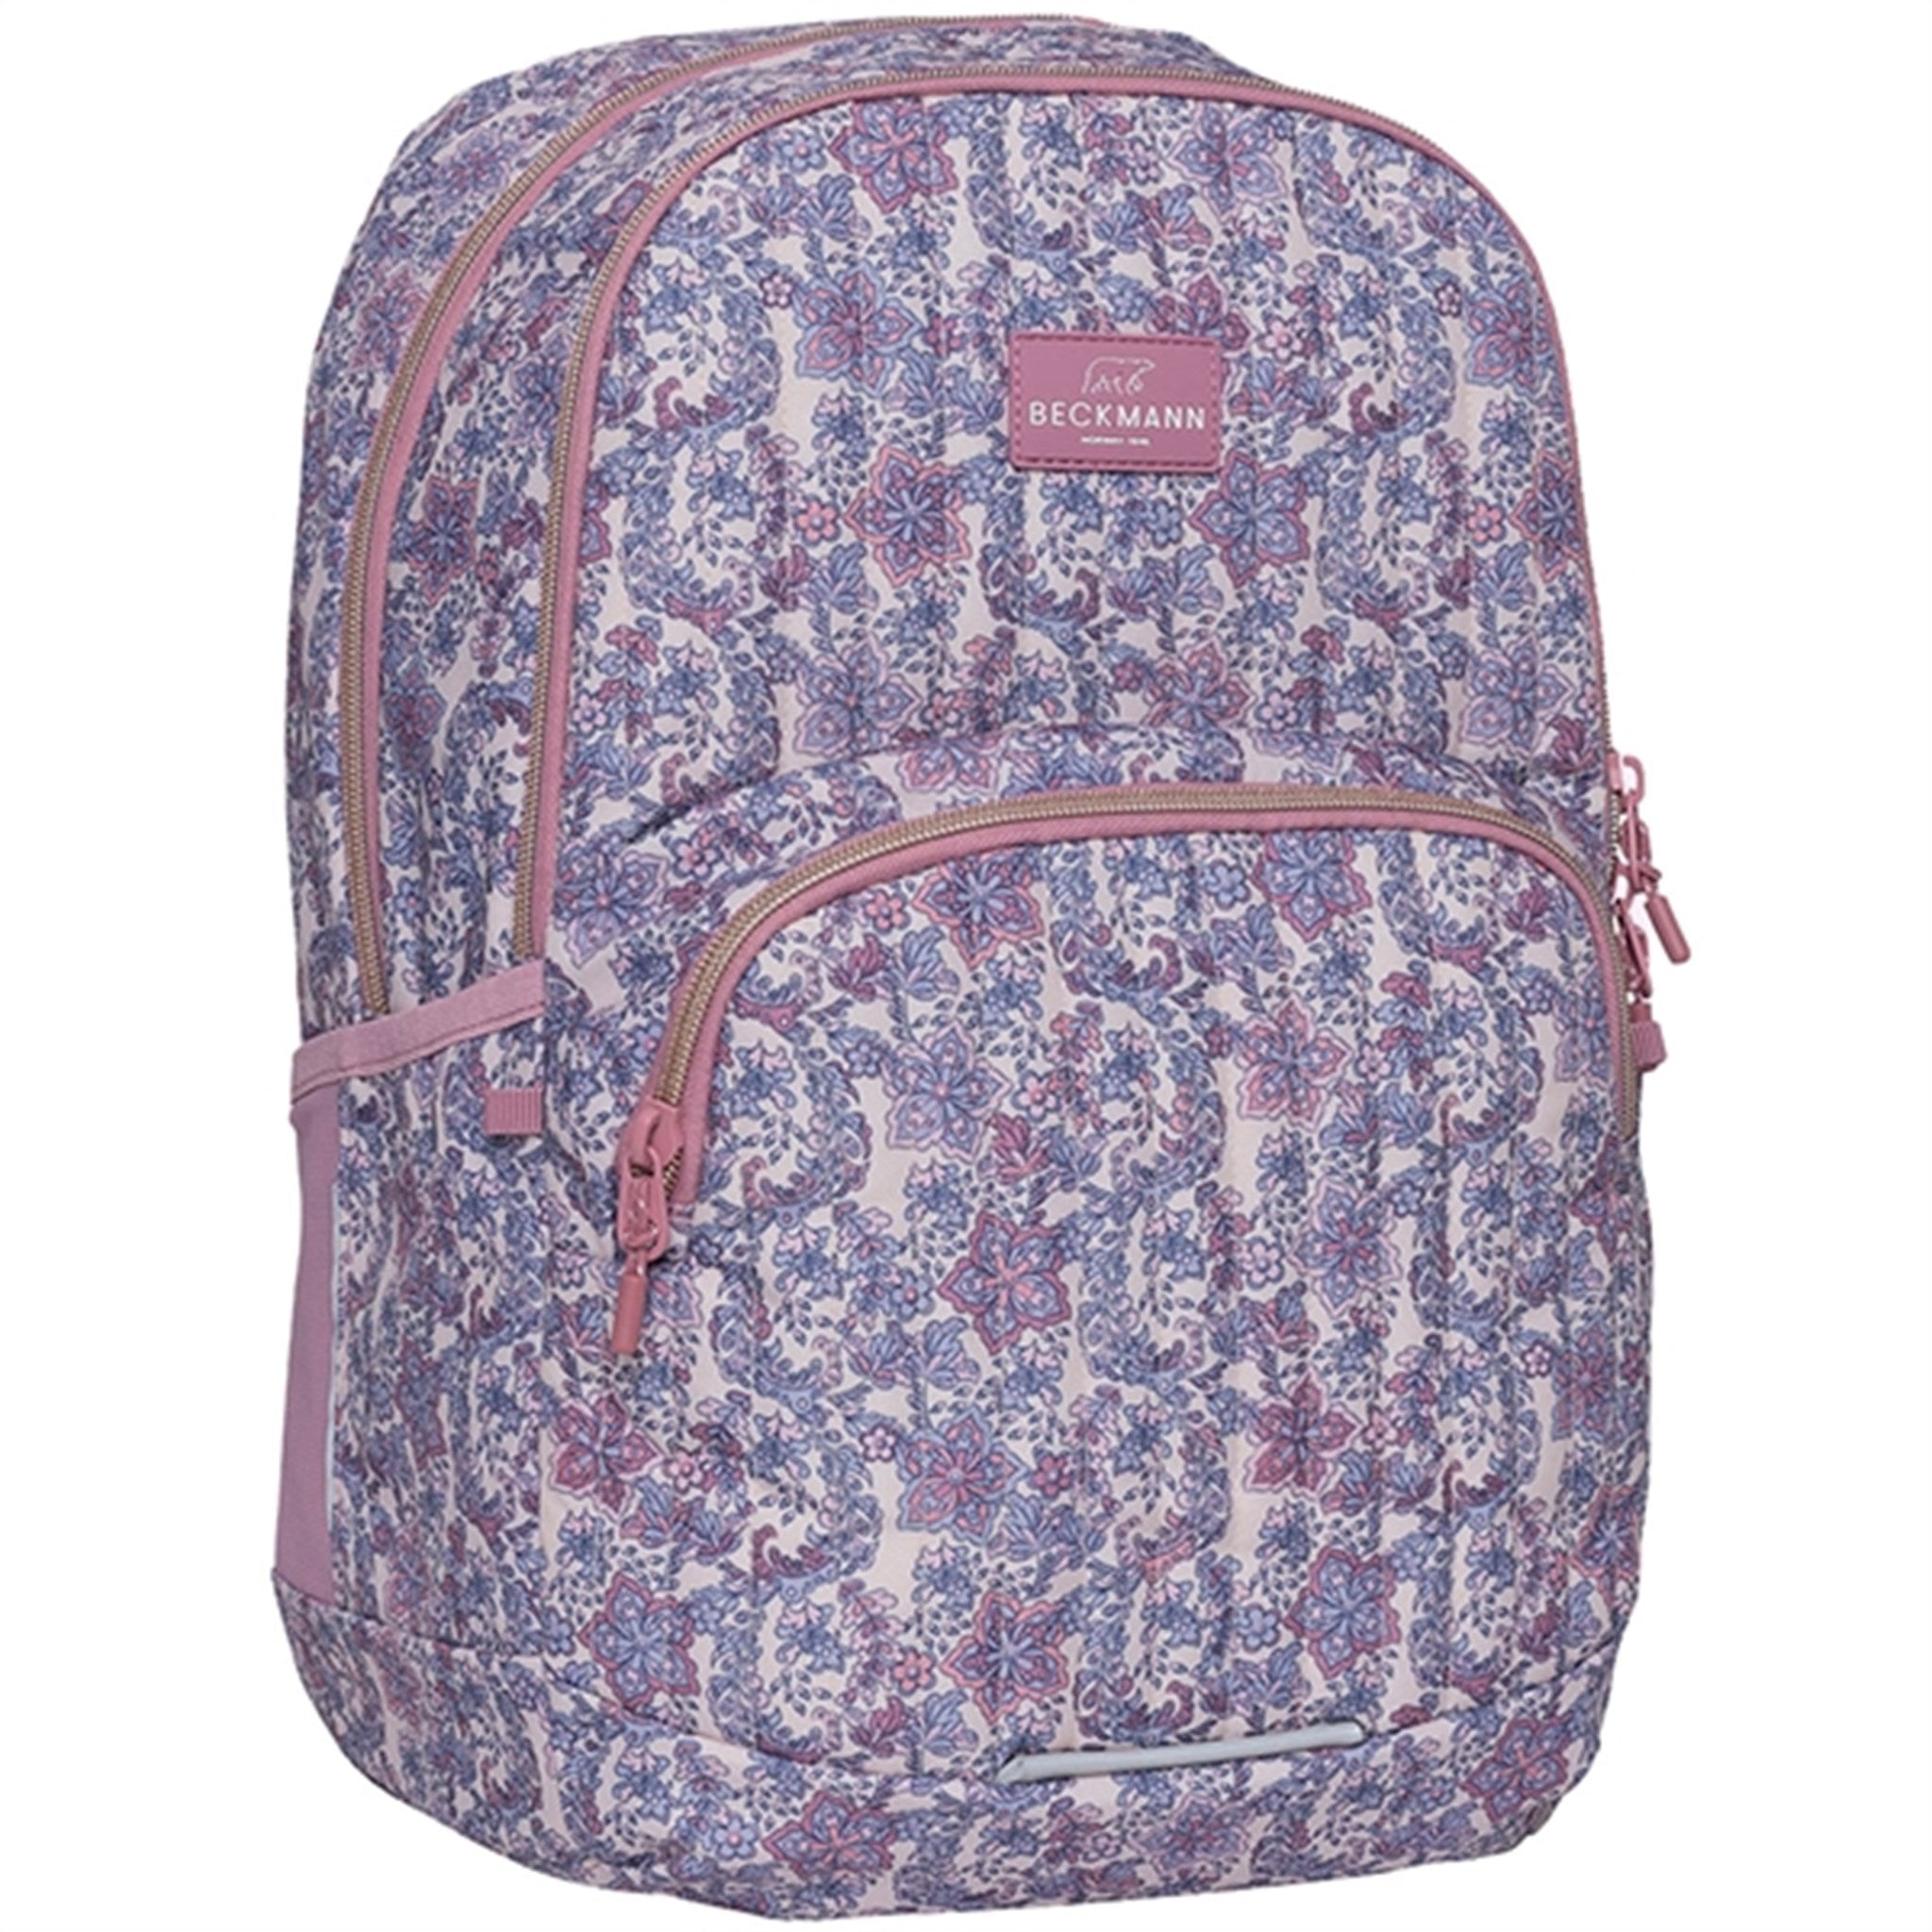 Beckmann Sport Junior Backpack Pink Quilt 6